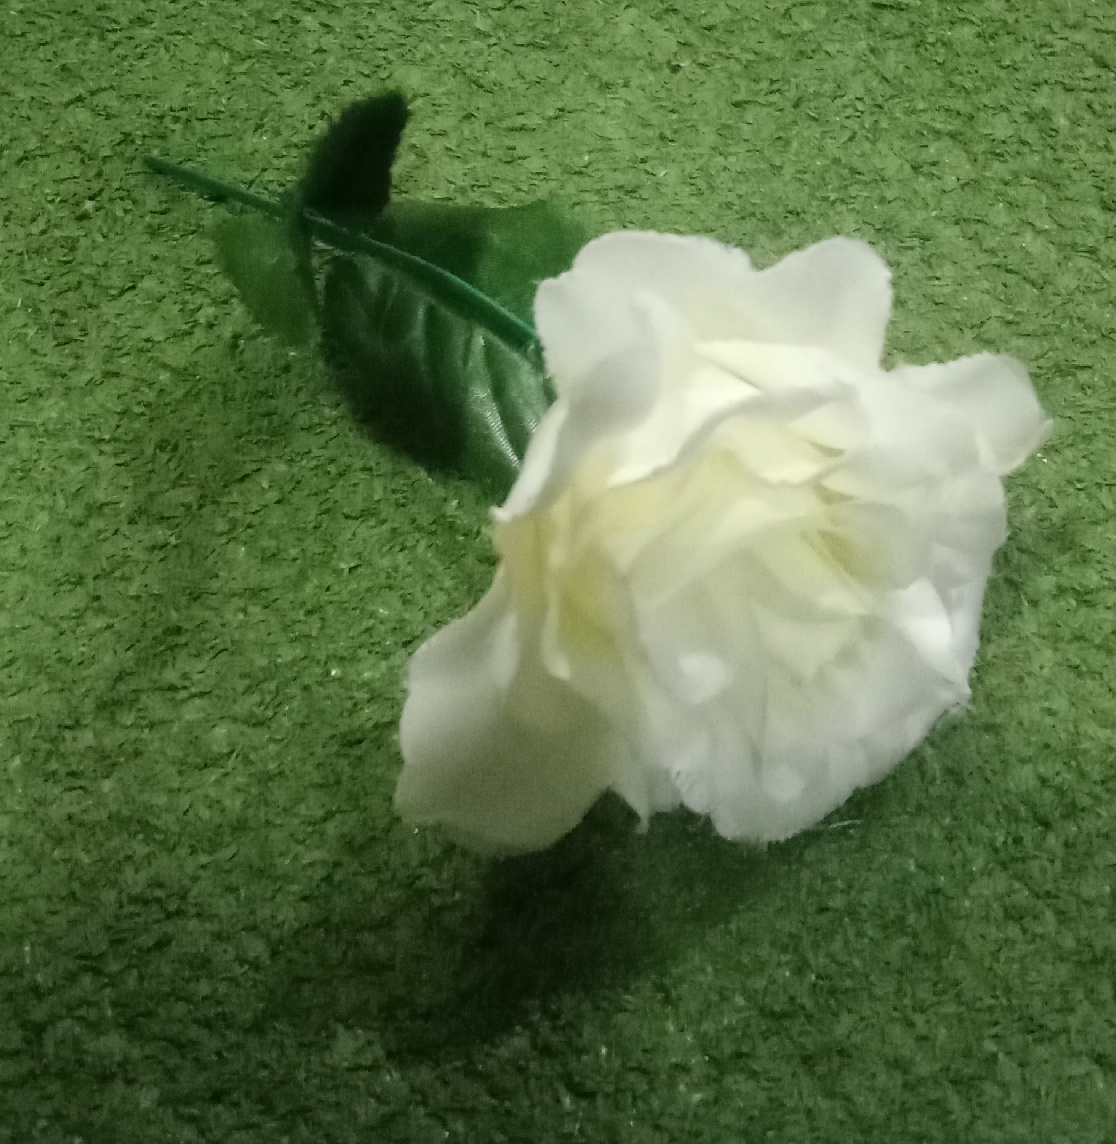 Single White Flower